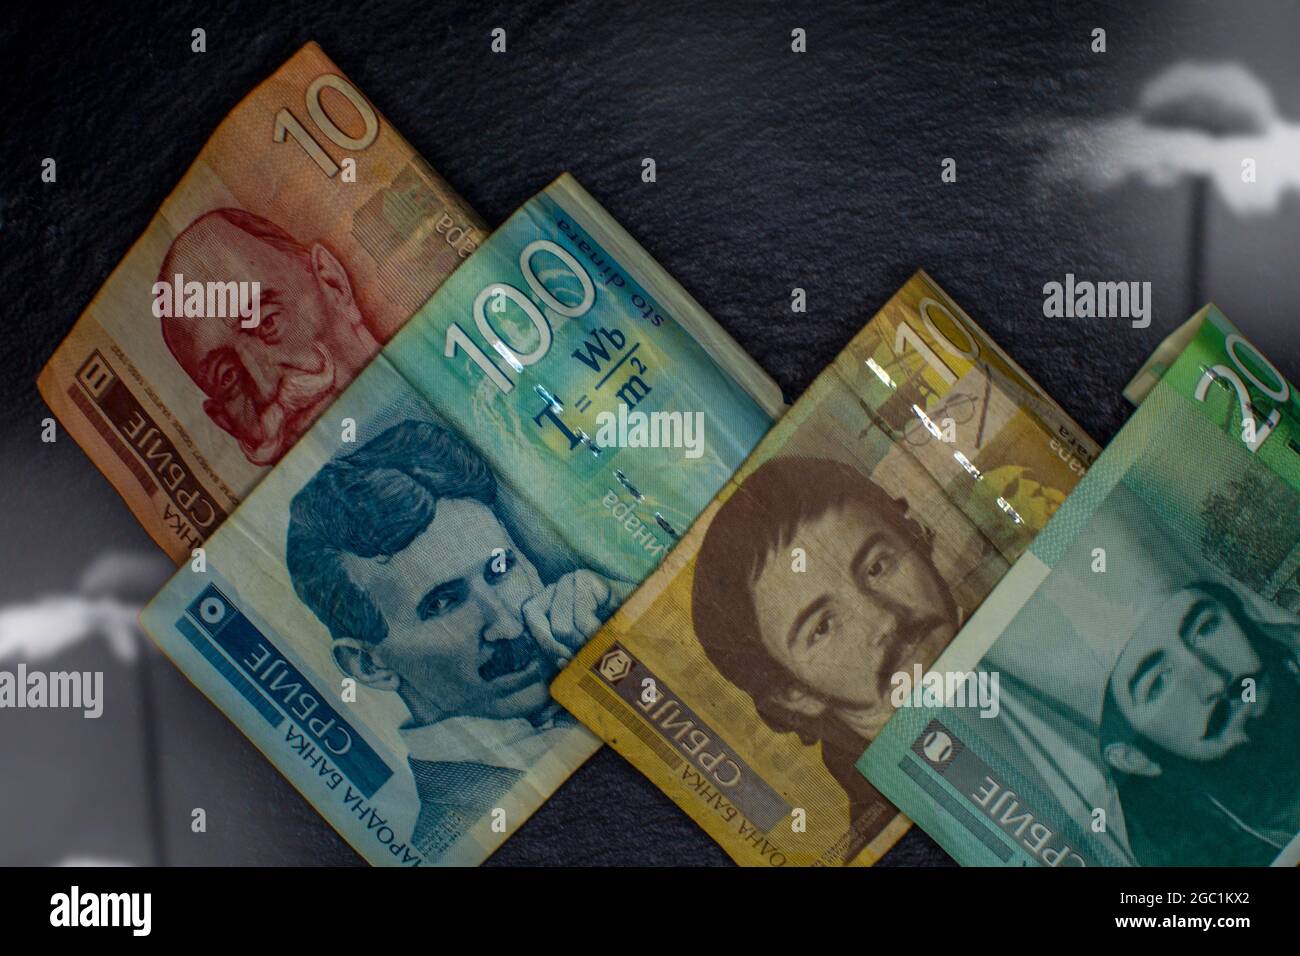 Serbain banknotes Stock Photo